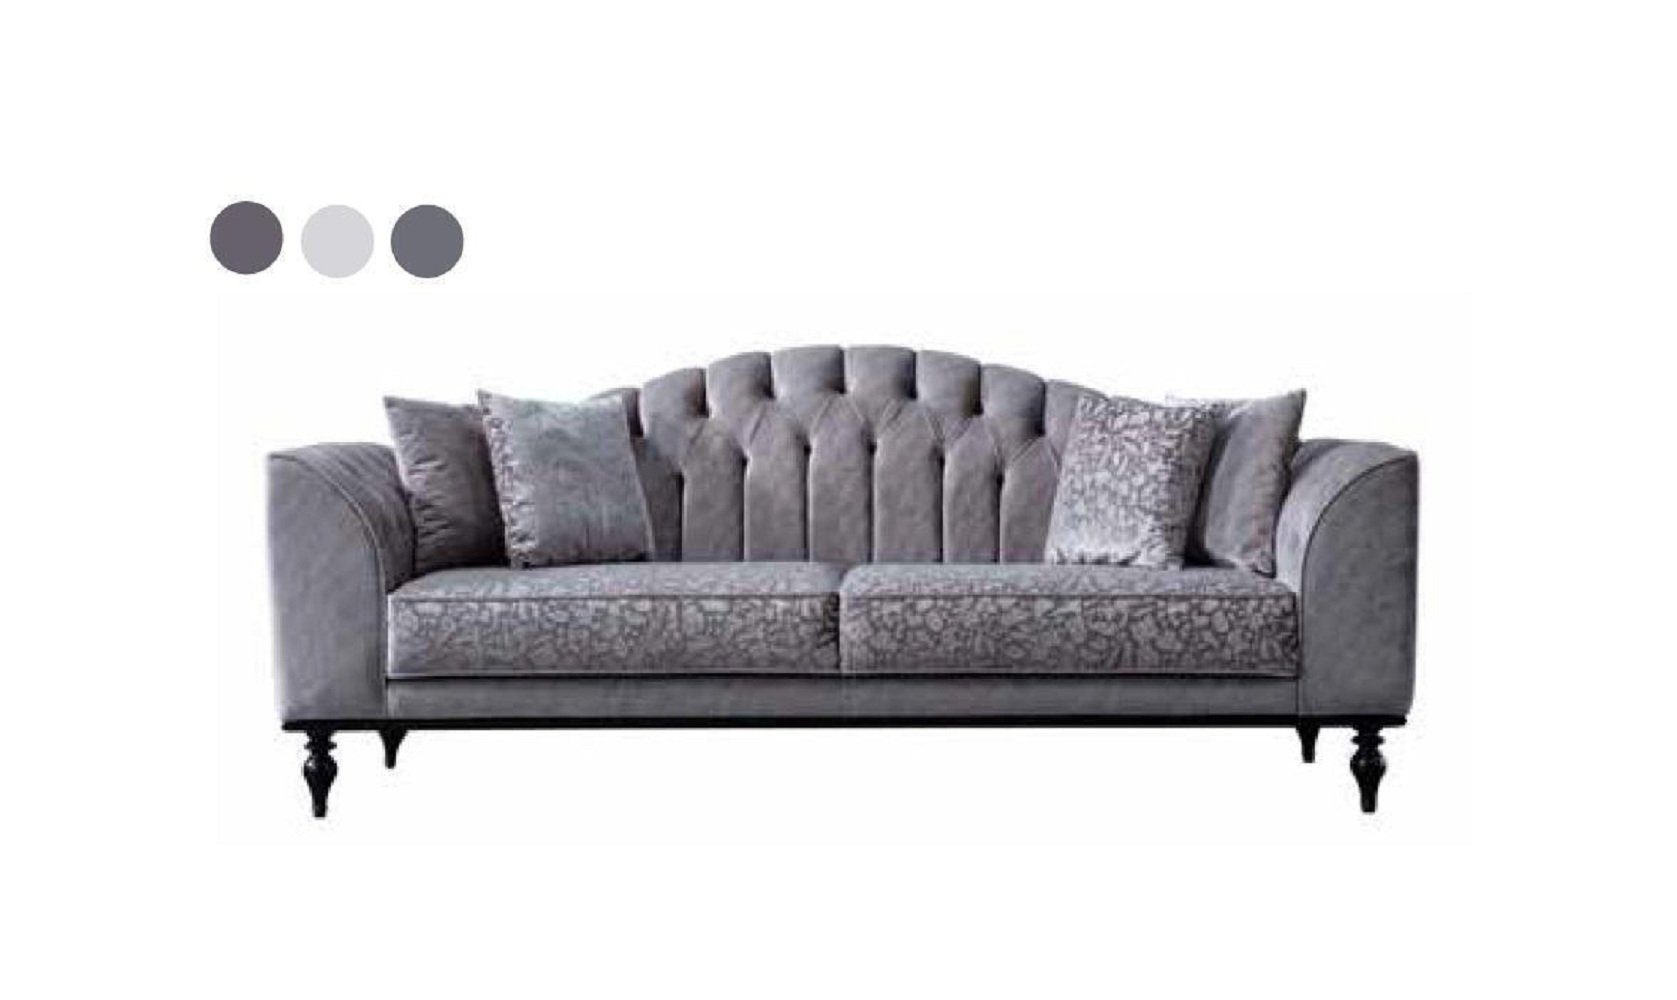 JVmoebel 3-Sitzer Europe Sofa Made Grau Teile, Dreisitzer Holz, Sofa 1 in Luxus Textil Couch Moderne Wohnzimmer